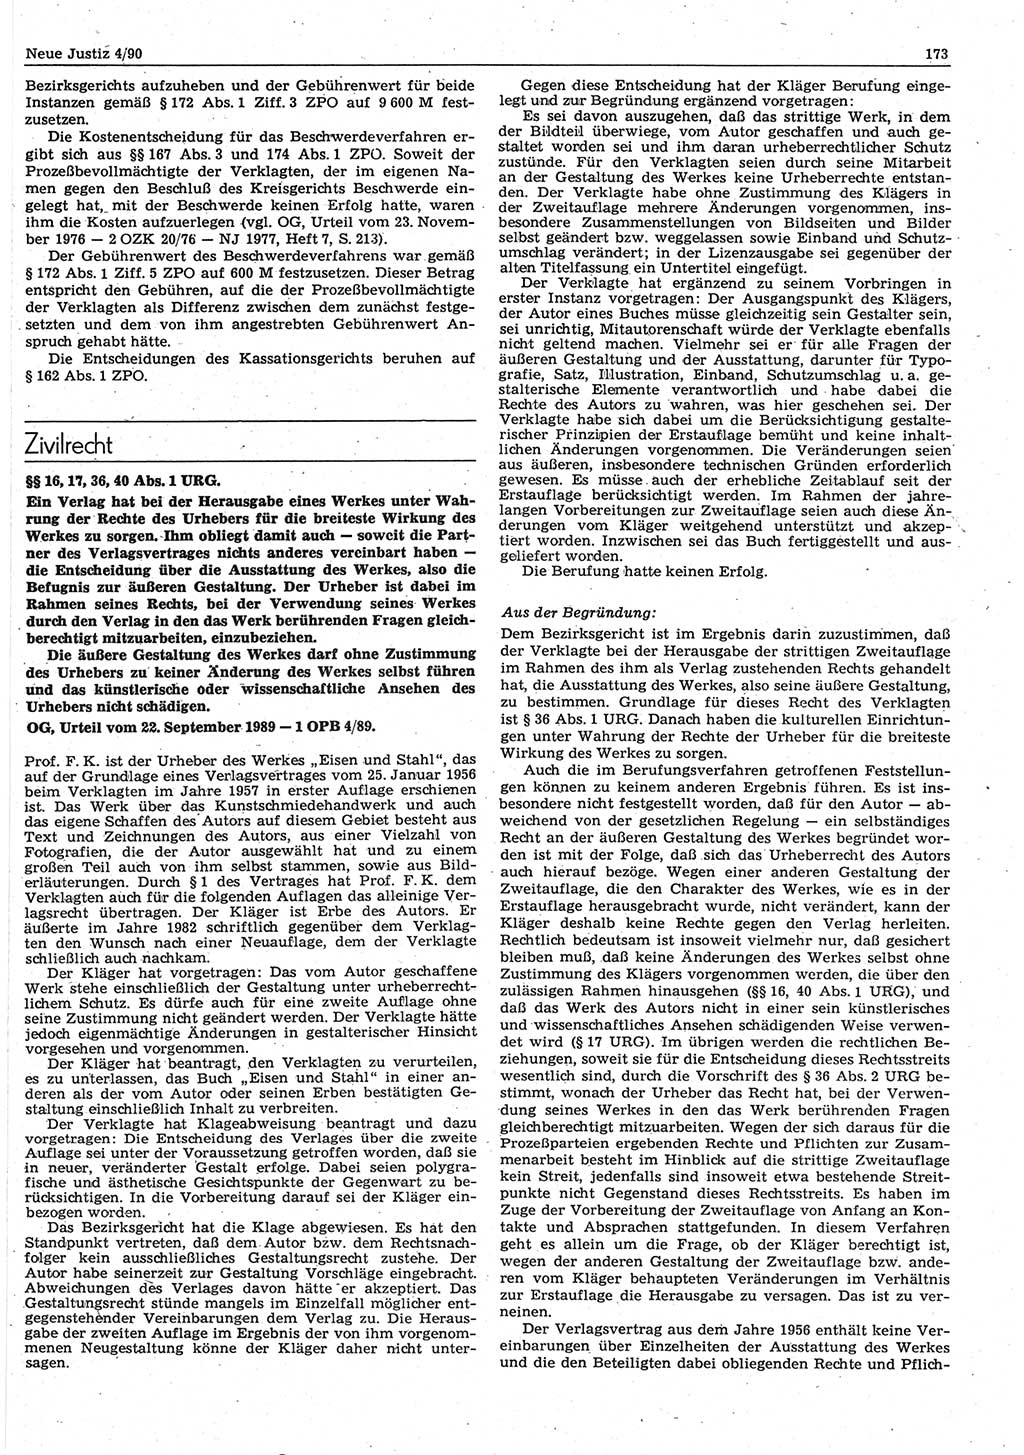 Neue Justiz (NJ), Zeitschrift für Rechtsetzung und Rechtsanwendung [Deutsche Demokratische Republik (DDR)], 44. Jahrgang 1990, Seite 173 (NJ DDR 1990, S. 173)